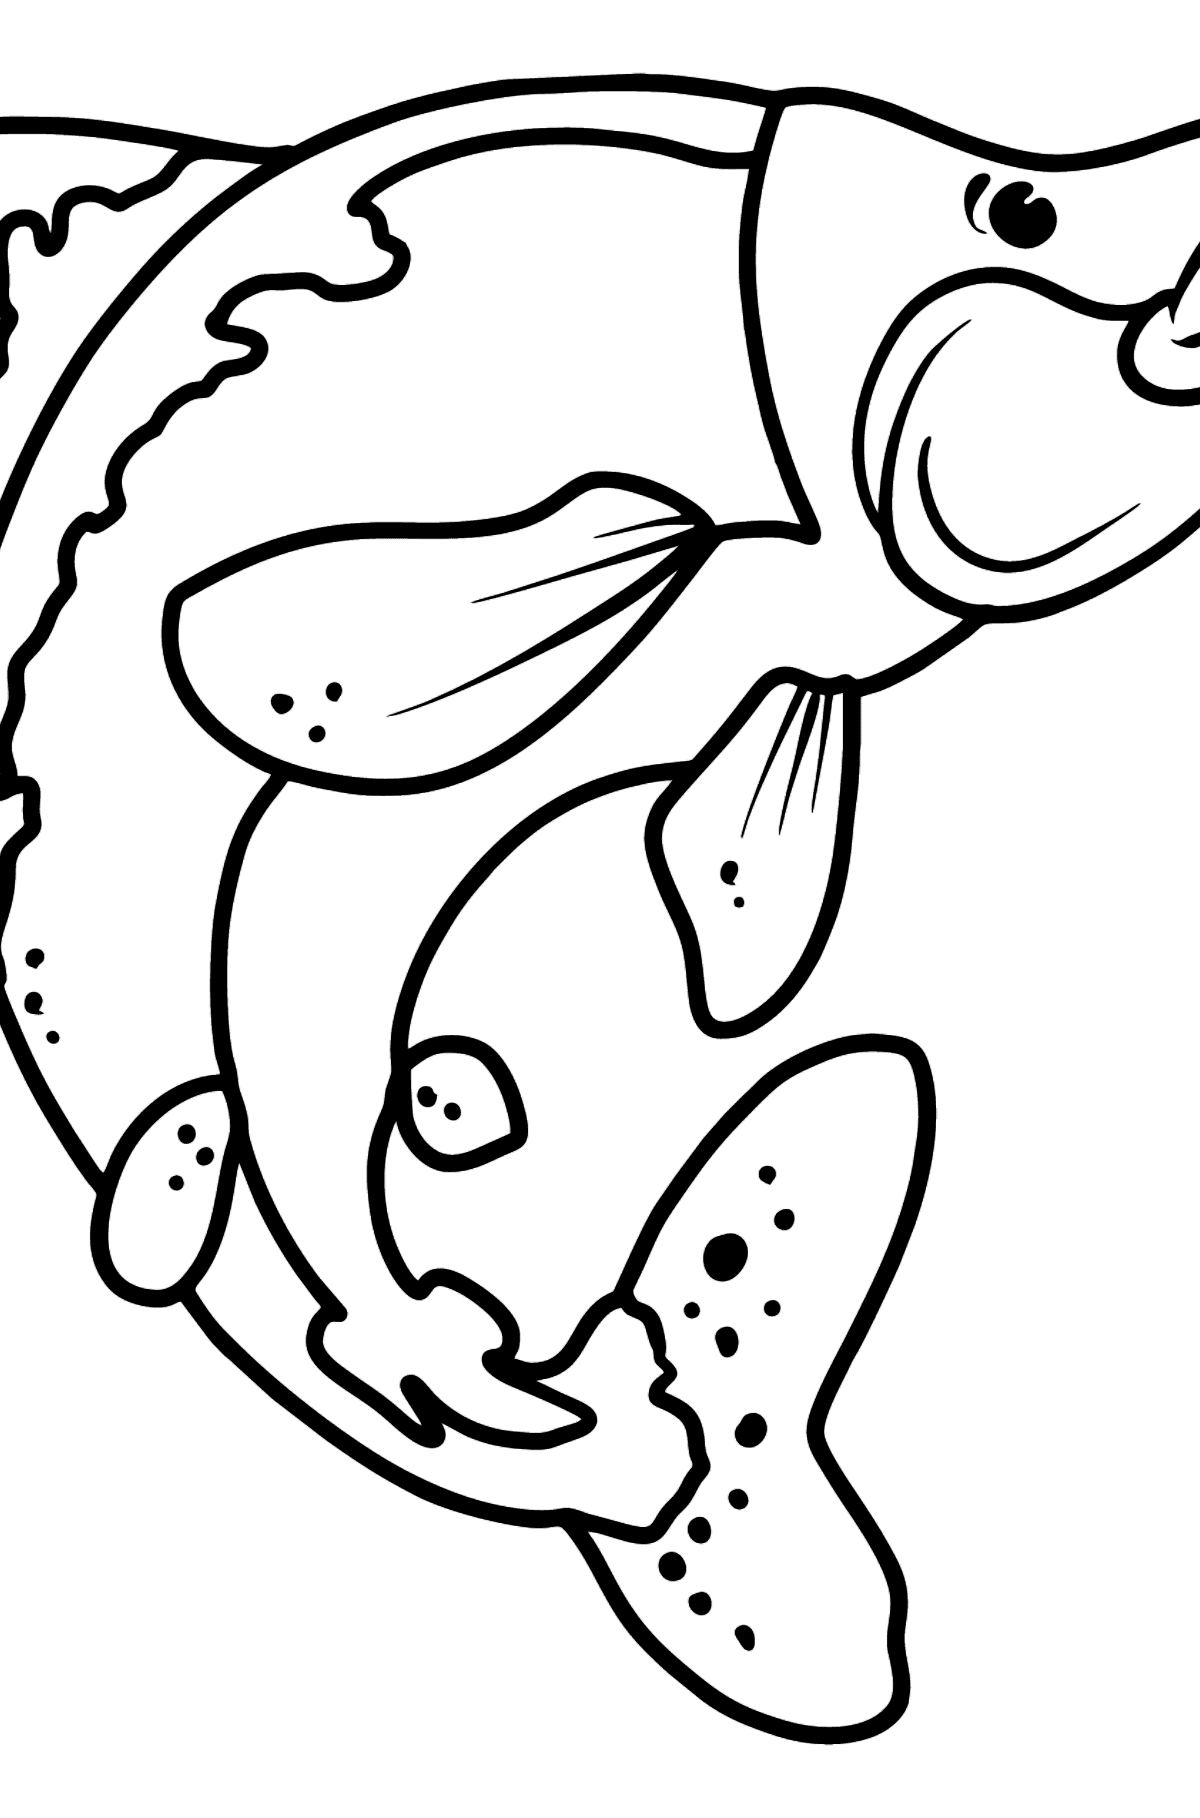 Desenho para colorir de salmão - Imagens para Colorir para Crianças